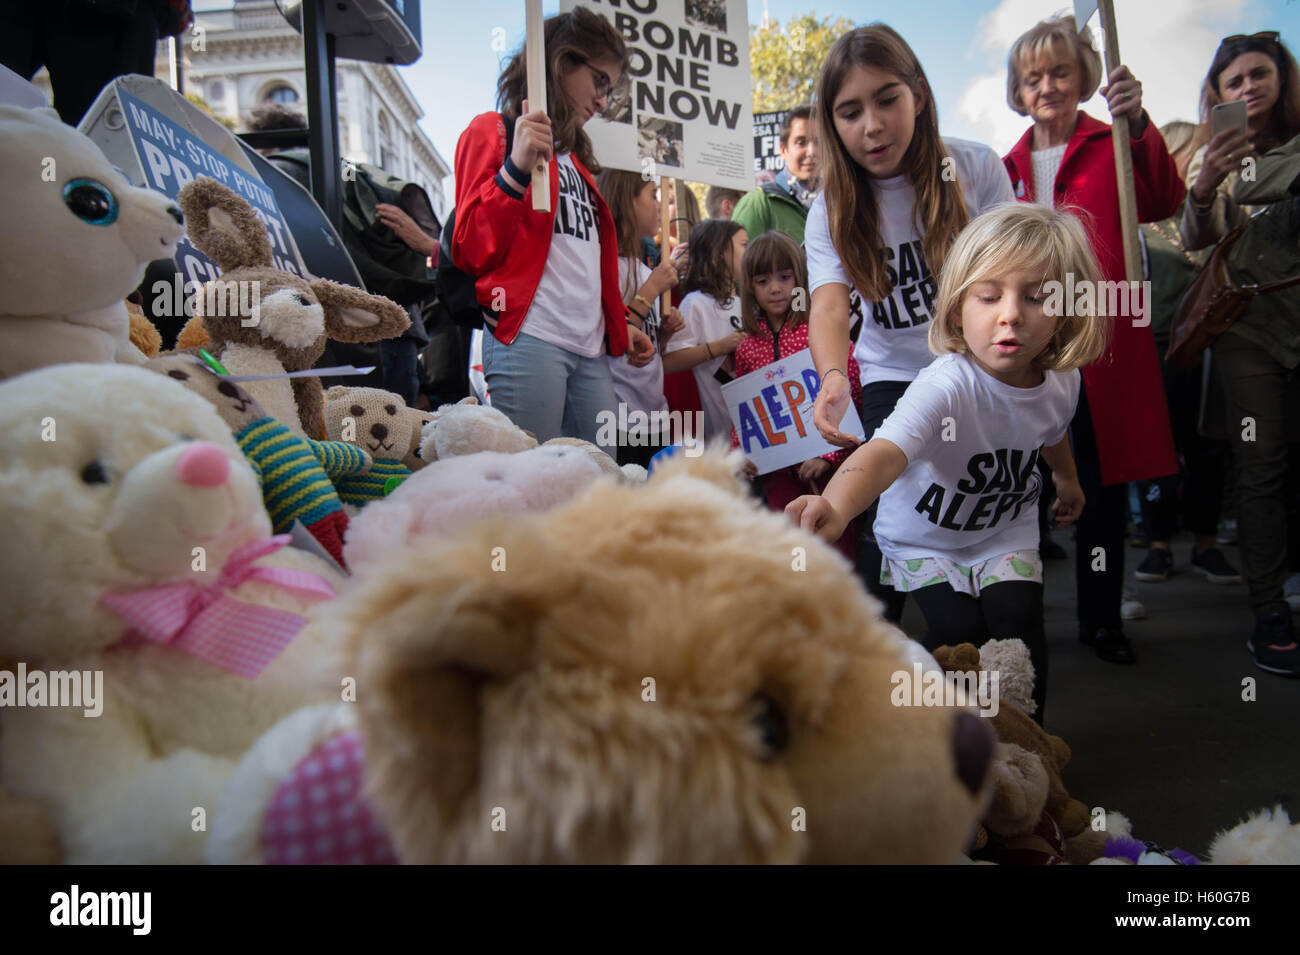 Bambini unisciti a manifestanti nella posa di Teddy Bear fuori dai cancelli di Downing Street nel centro di Londra durante una manifestazione di protesta per evidenziare il numero elevato di bambini morti in attentati in Siria e per chiedere al governo di intervenire su russo e siriano campagne di bombardamenti. Foto Stock